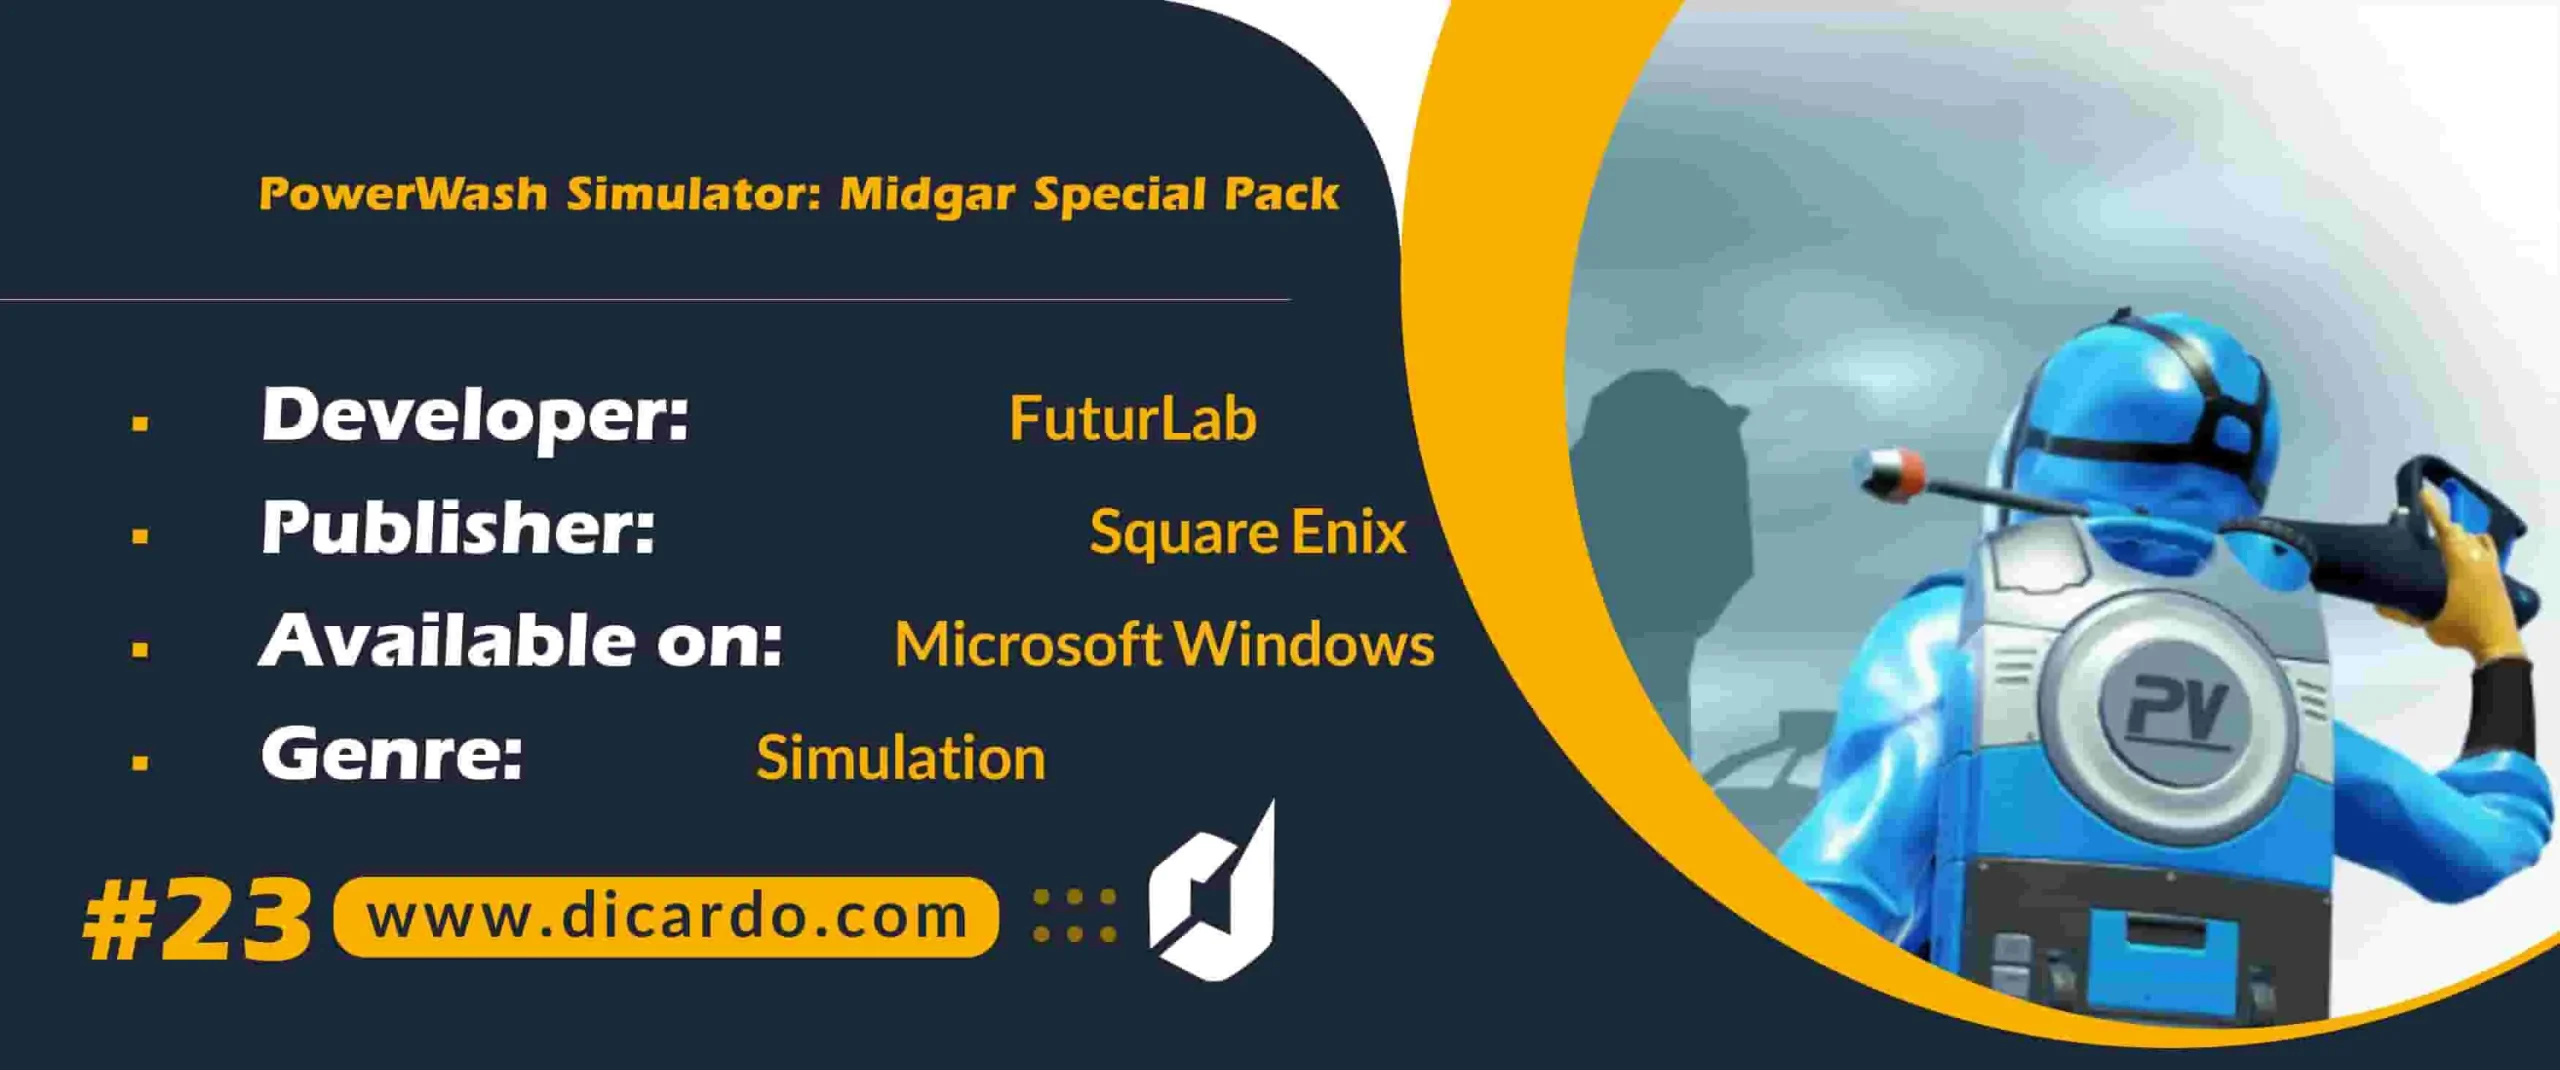 #23 پاور واش سیمولیشر میدگار اسپیشال پک PowerWash Simulator: Midgar Special Pack